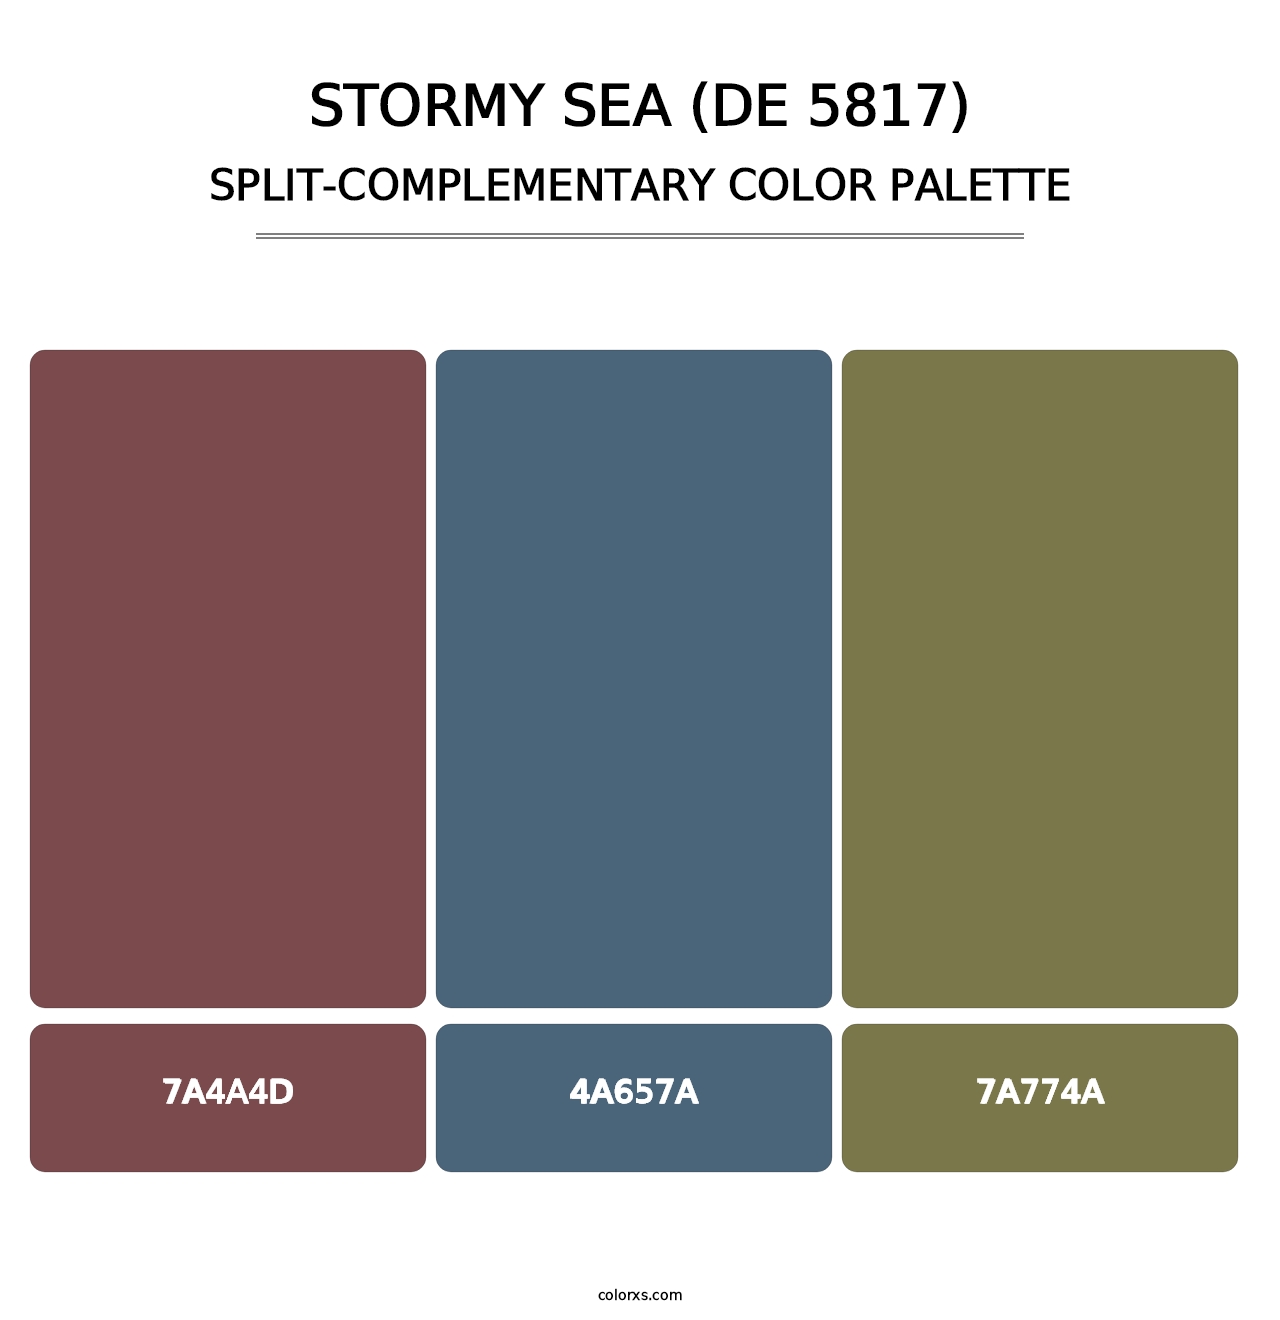 Stormy Sea (DE 5817) - Split-Complementary Color Palette